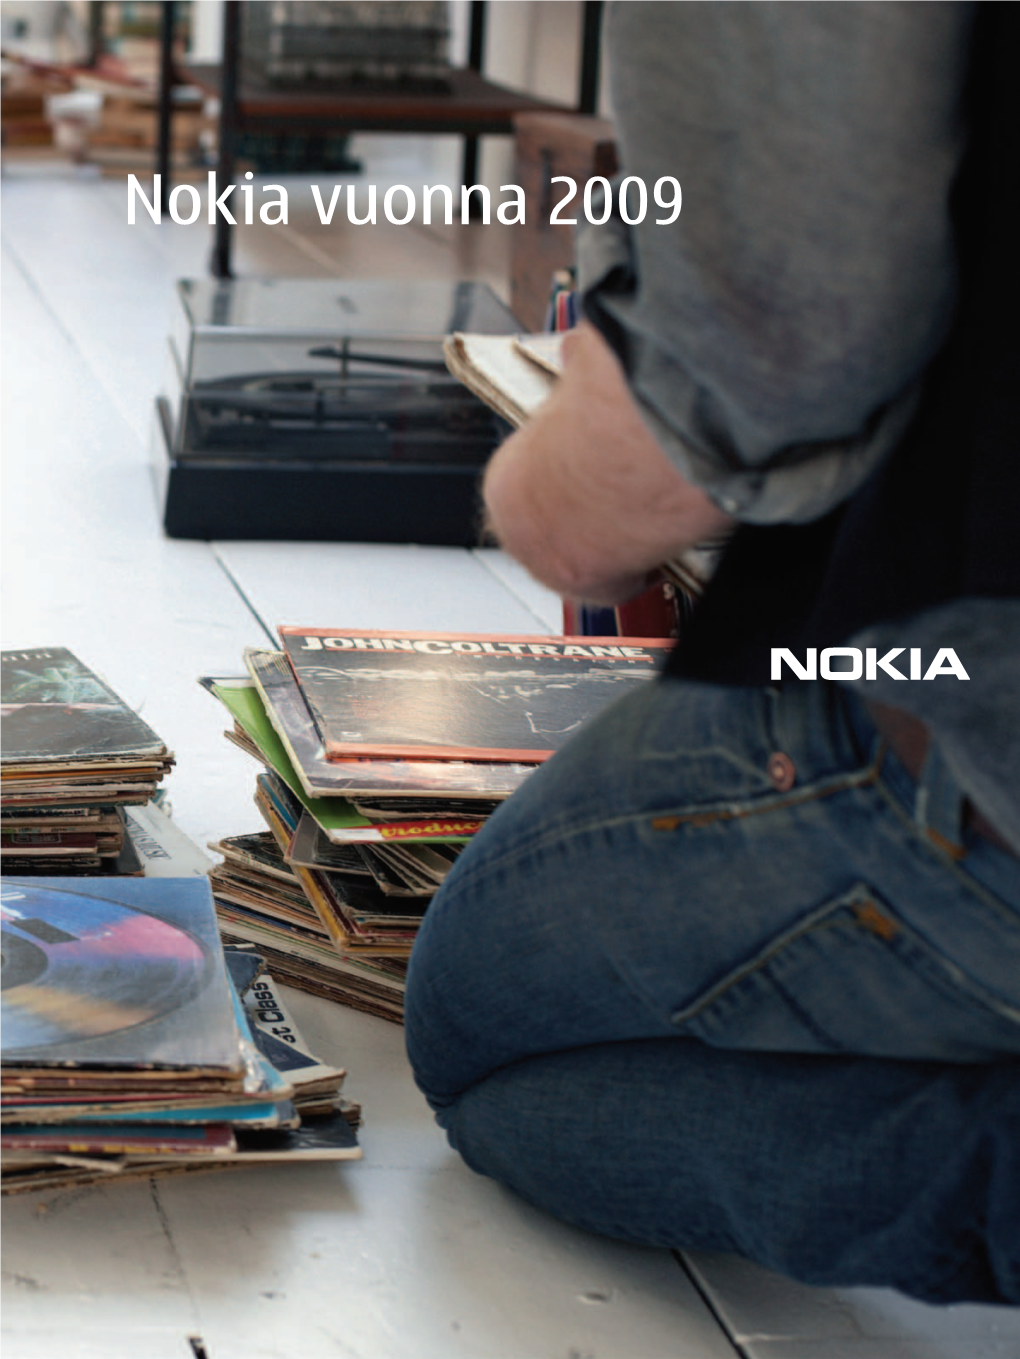 Nokia Vuonna 2009 Hallituksen Toimintakertomus Ja Nokian Tilinpäätös 2009